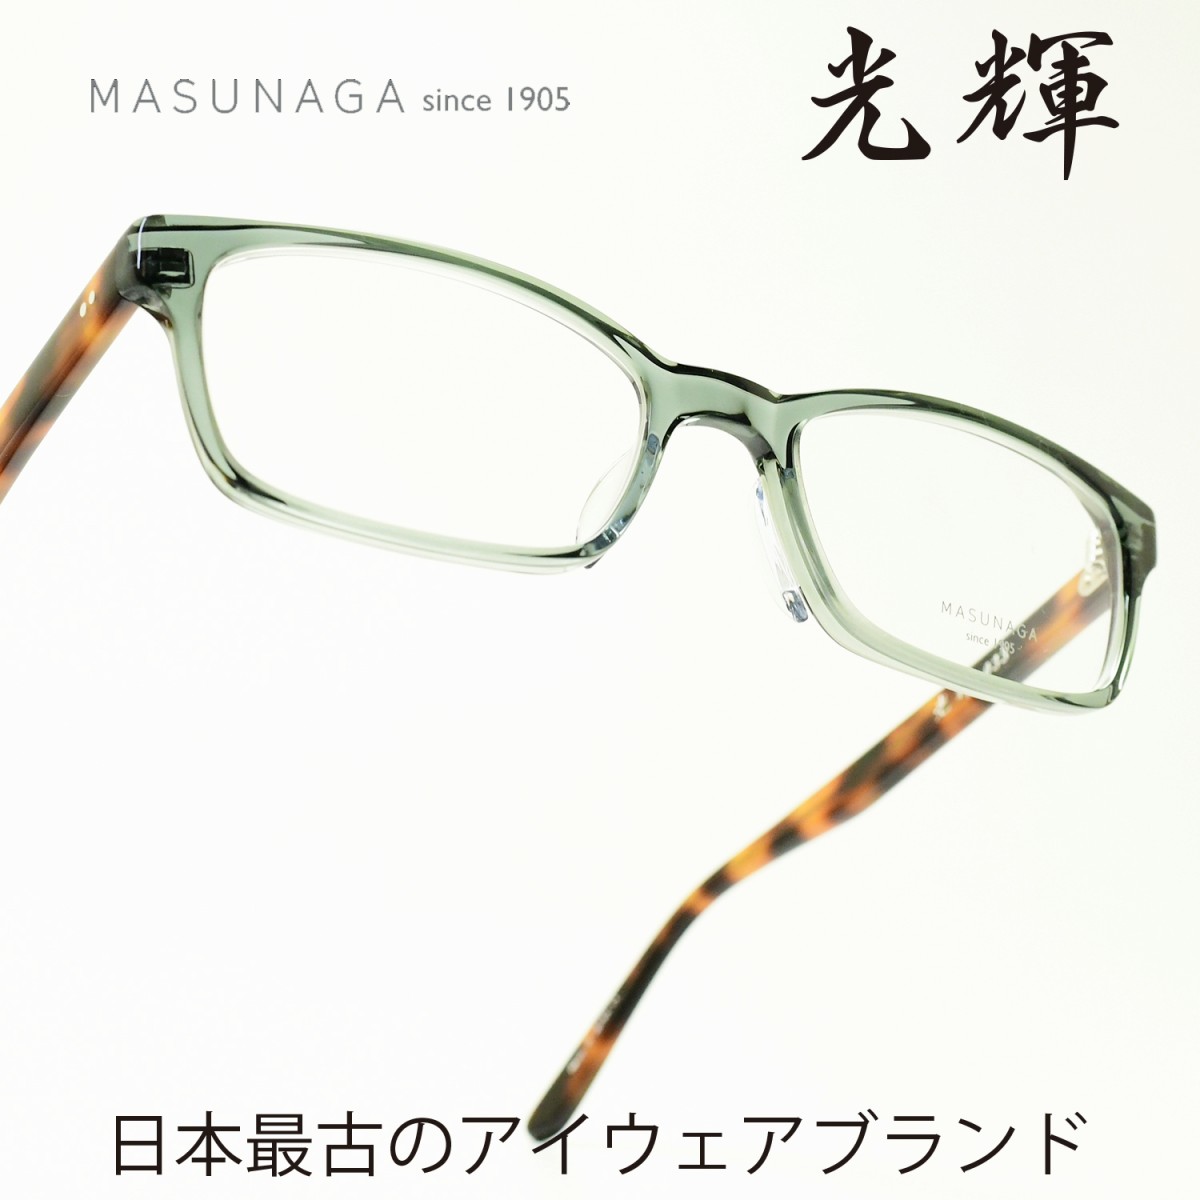 増永眼鏡 MASUNAGA 光輝 033 col-98 L GREEN DEMI メガネ 眼鏡 めがね メンズ レディース おしゃれ ブランド 人気 おすすめ フレーム 流行り 度付き レンズ